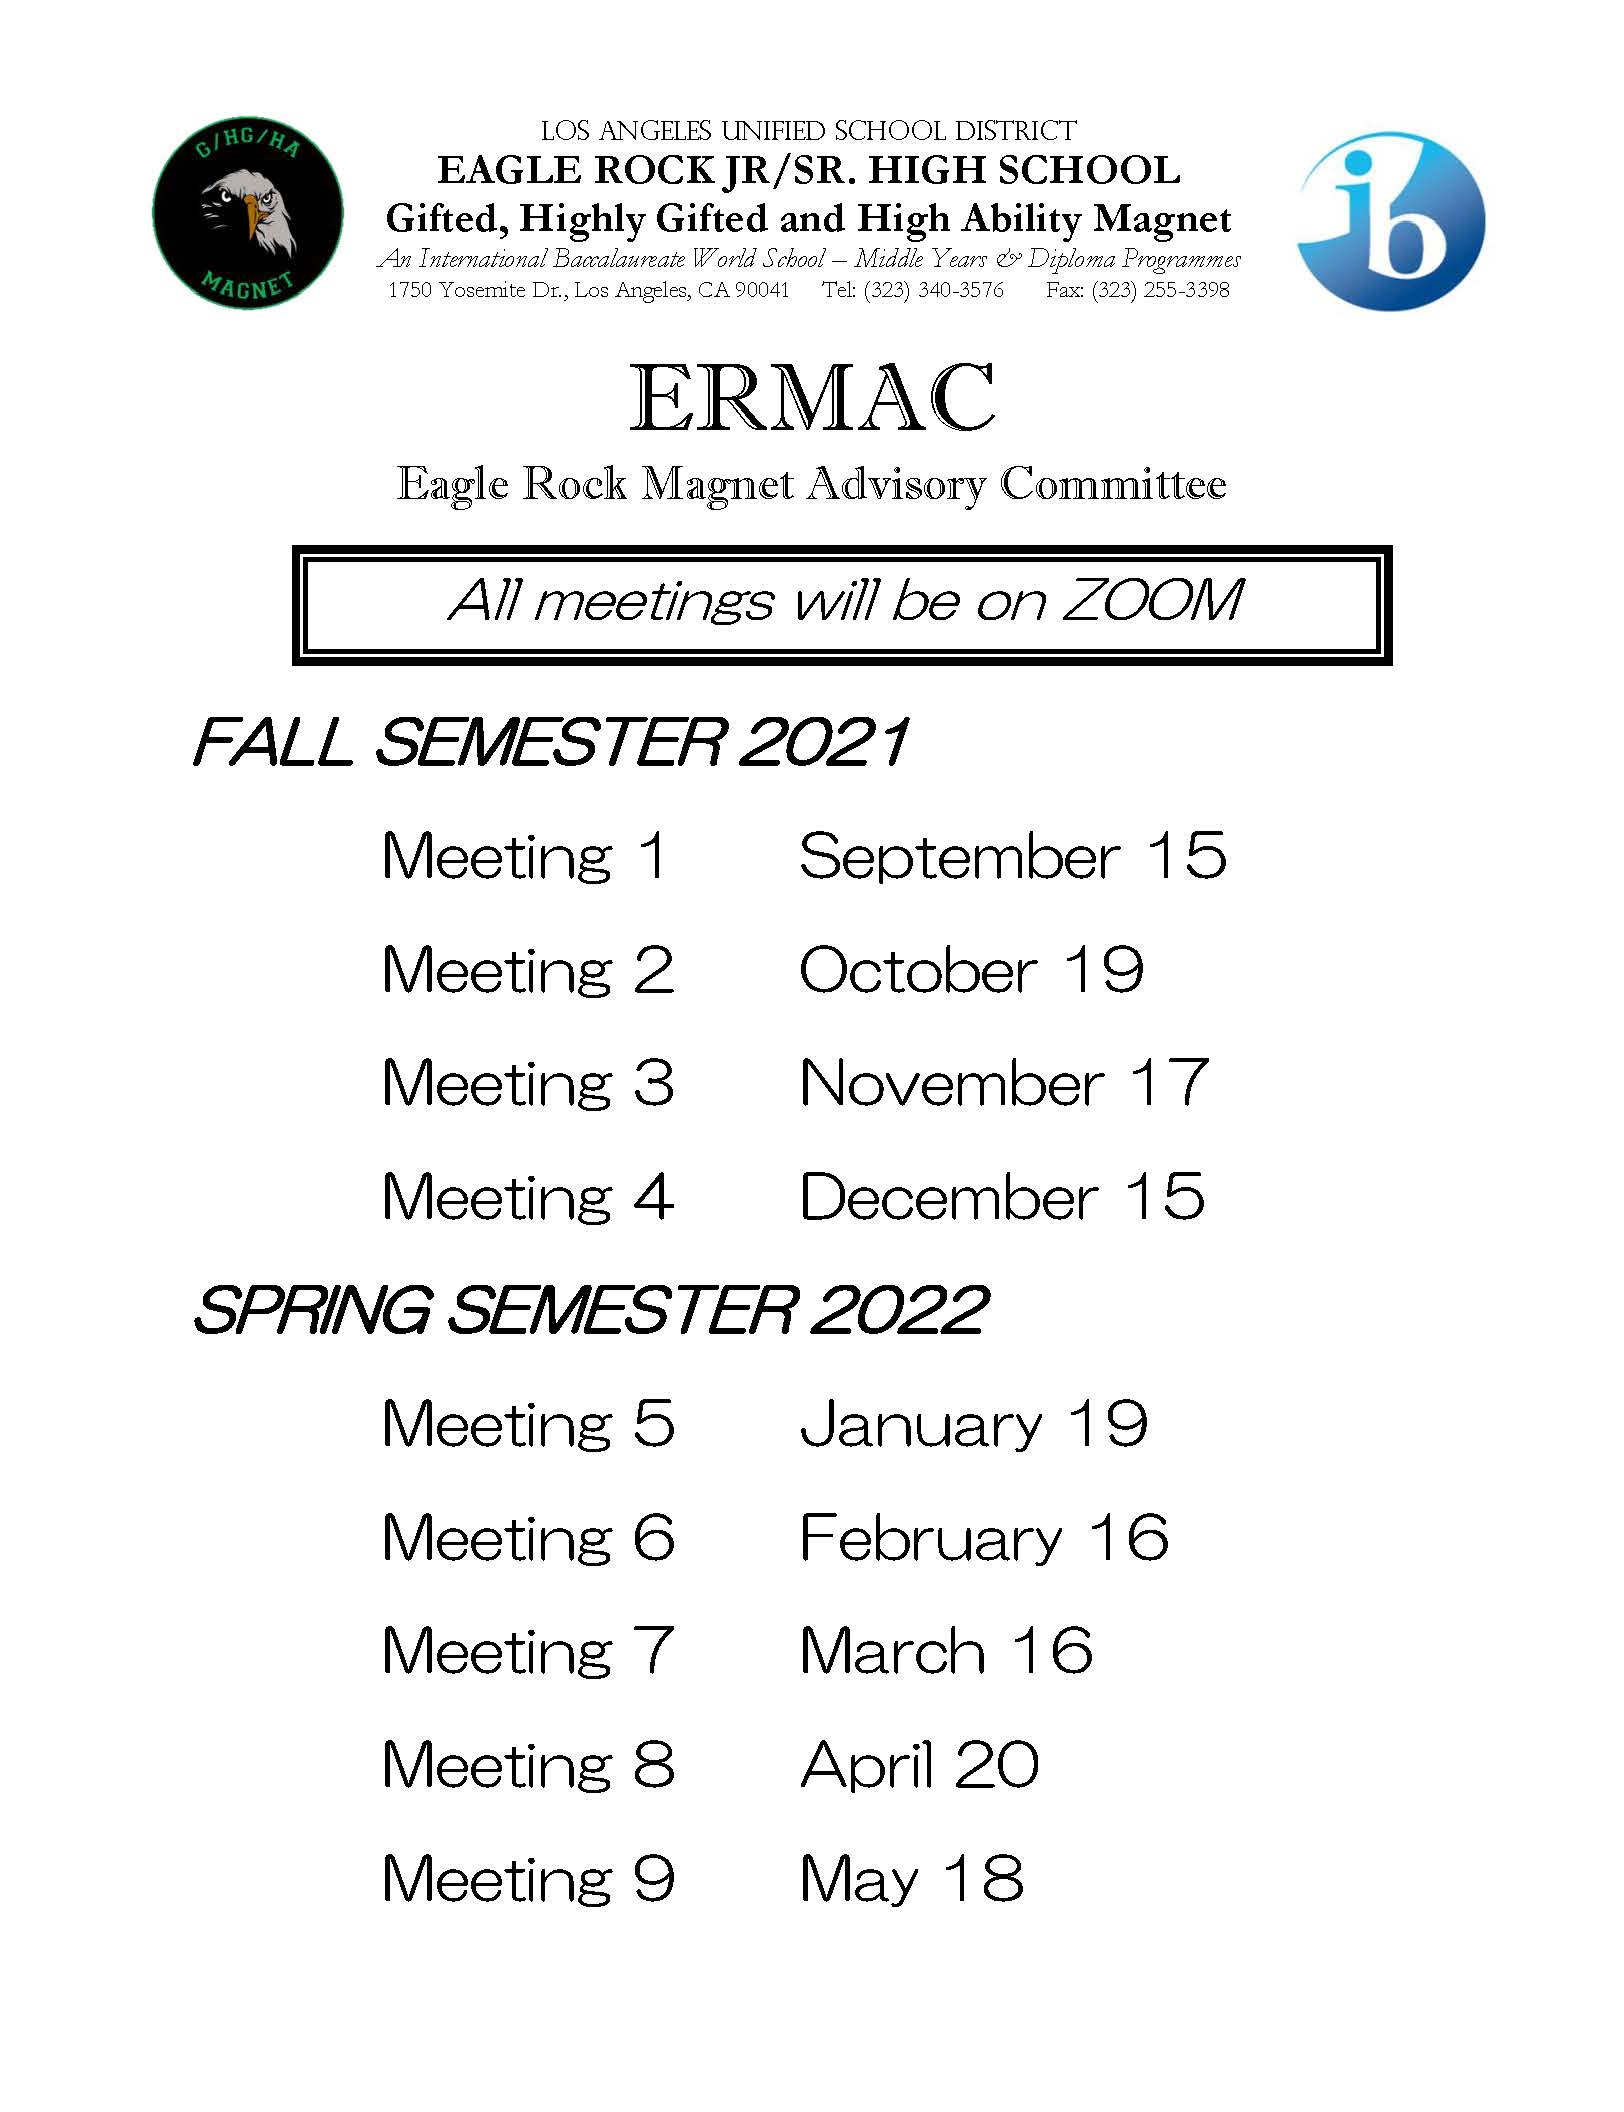 ERMAC Meeting schedule 2021-2022